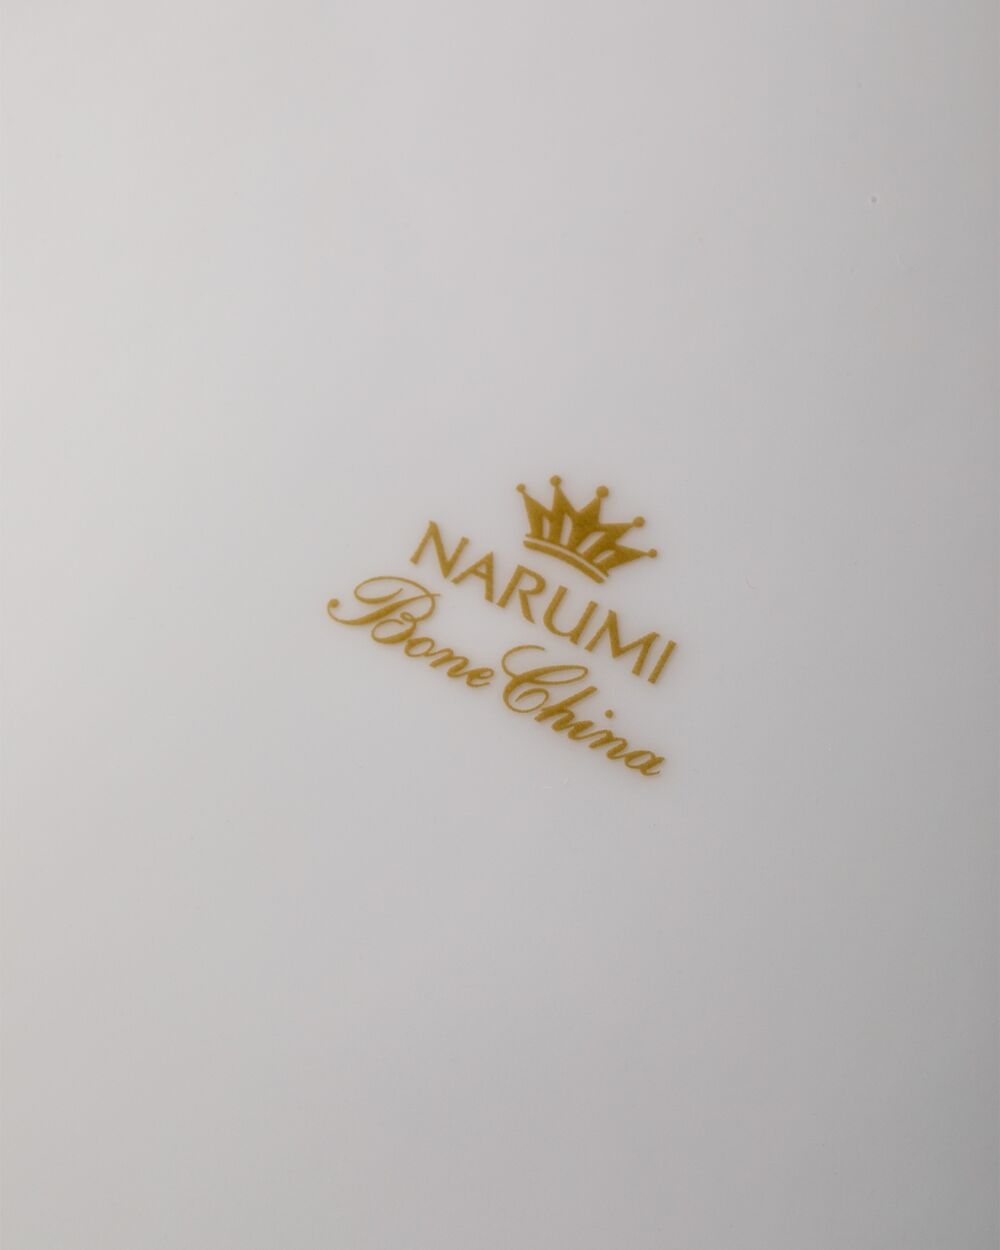 Сервиз чайный Narumi Сверкающая Платина на 6 персон 21 предмет, фарфор костяной - фото 10